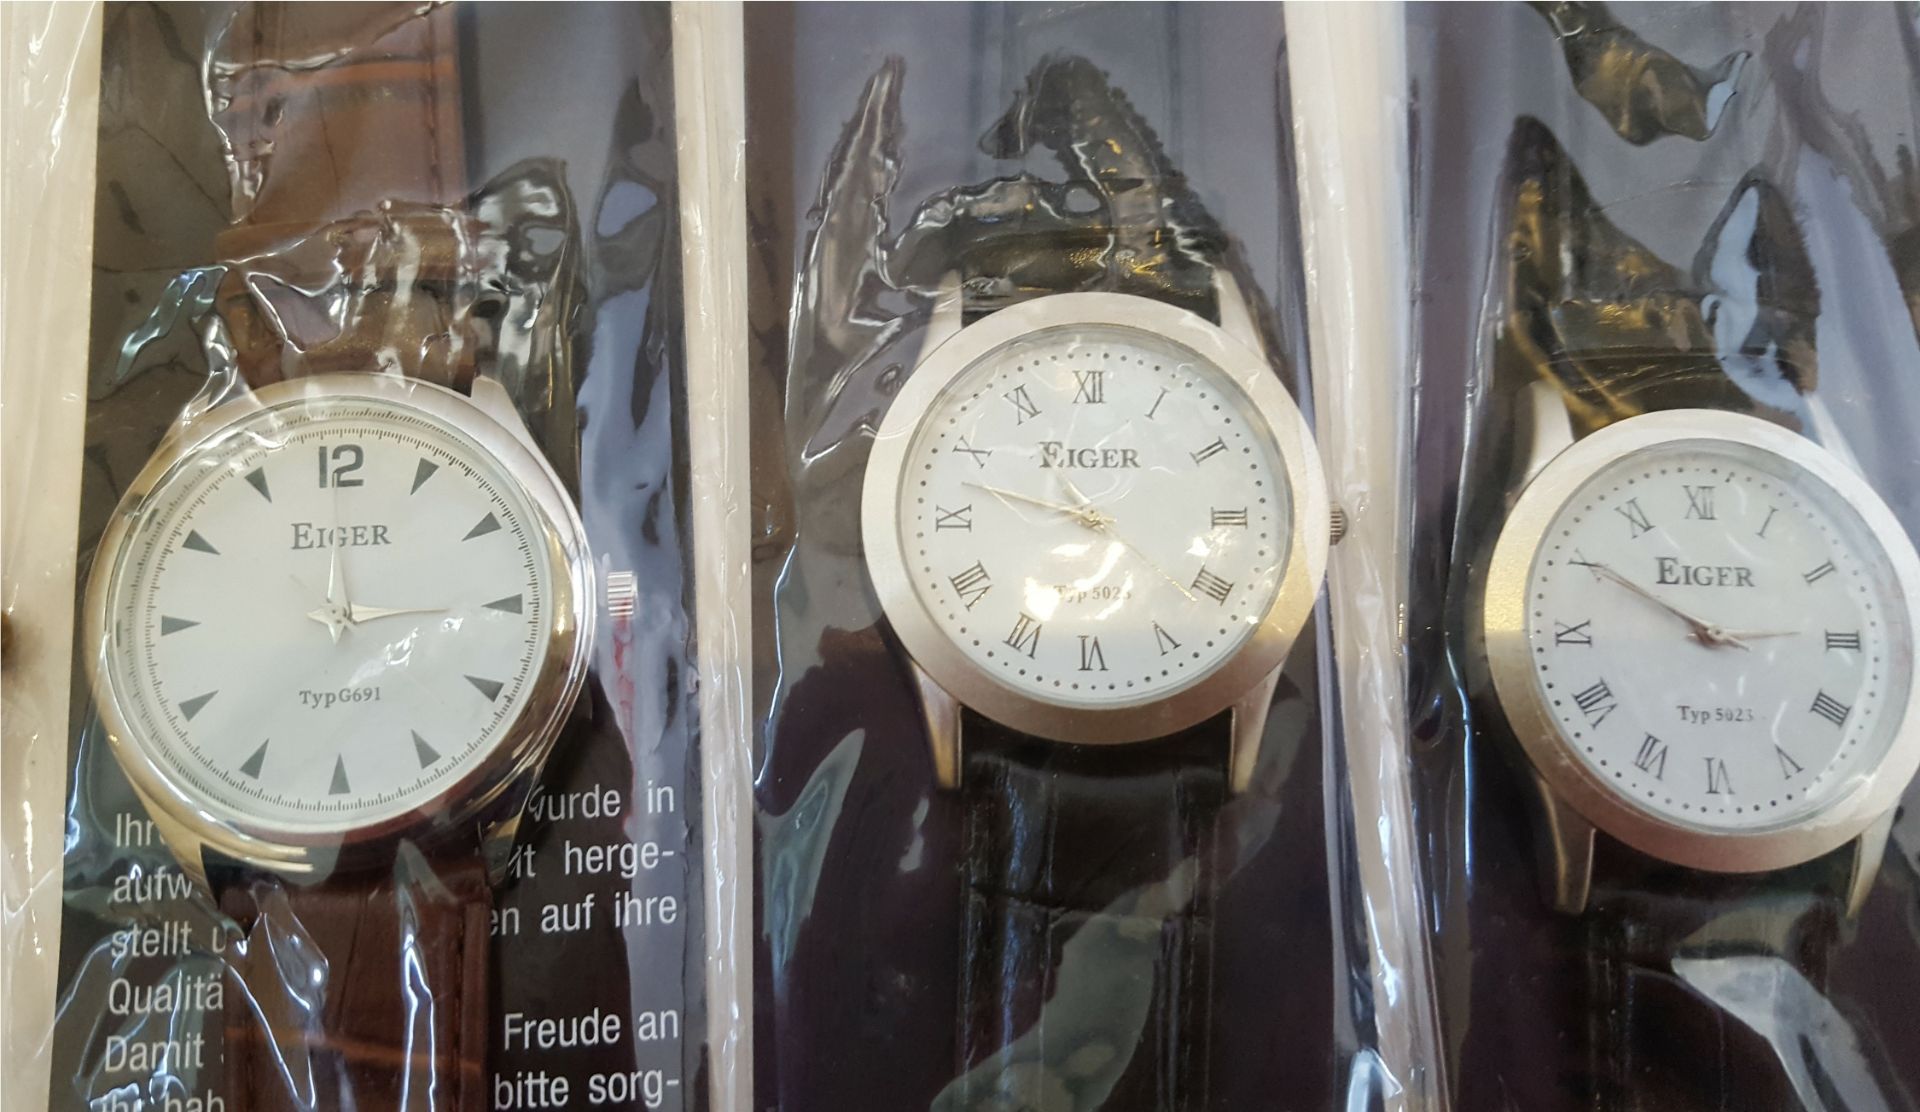 Vintage Wrist Watches 1 x Carvel 17 Jewels 3 x Eiger & 1 x Limit - Bild 3 aus 4